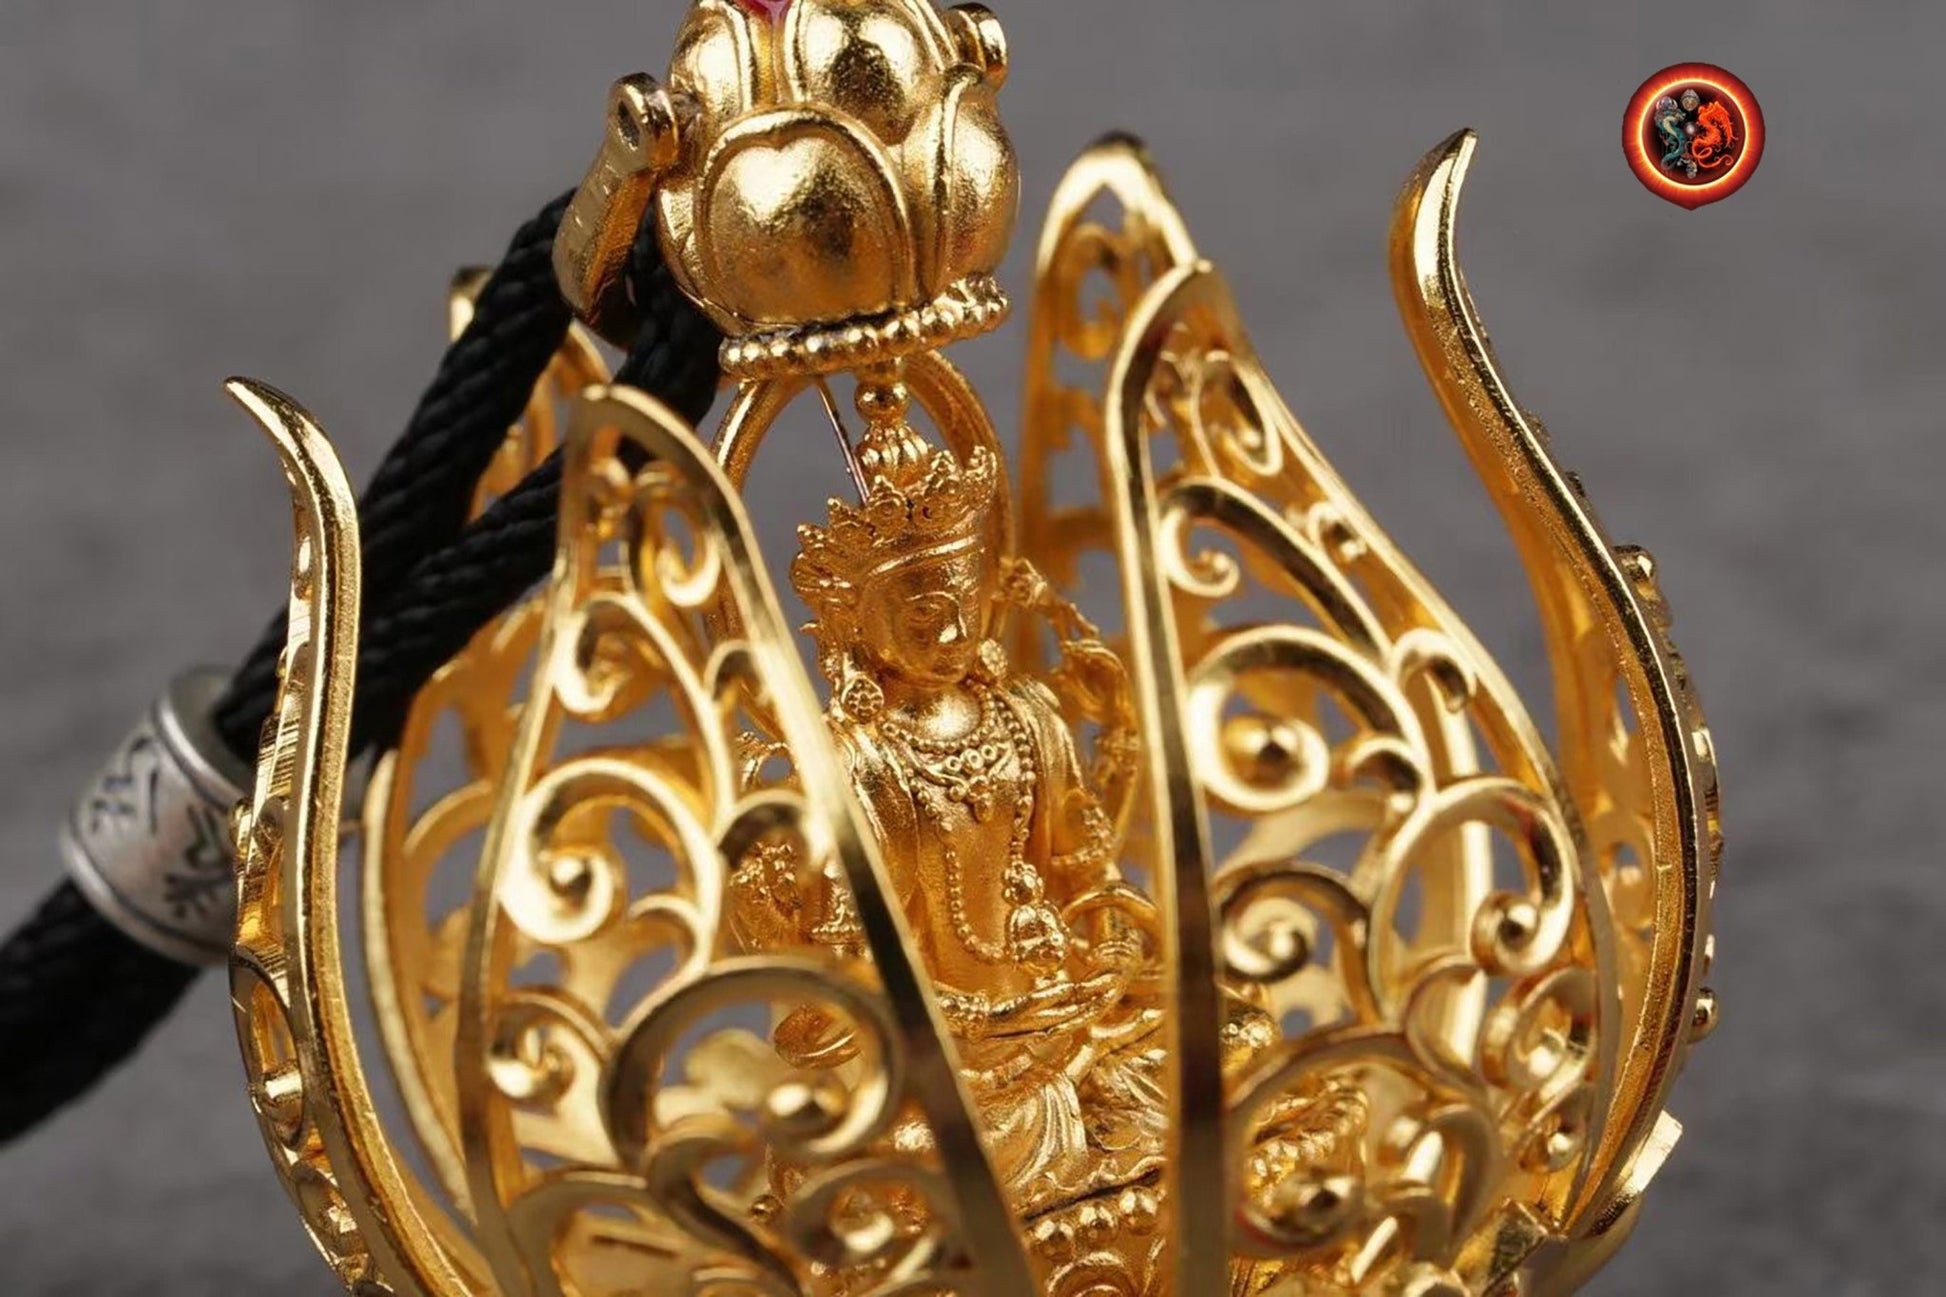 pendentif bouddha ,Amulette. Guan Yin, Chenrezi dans un Lotus à 6 pétales. laiton, plaqué or 24k pendentif ouvrant grâce a un bouton - obsidian dragon